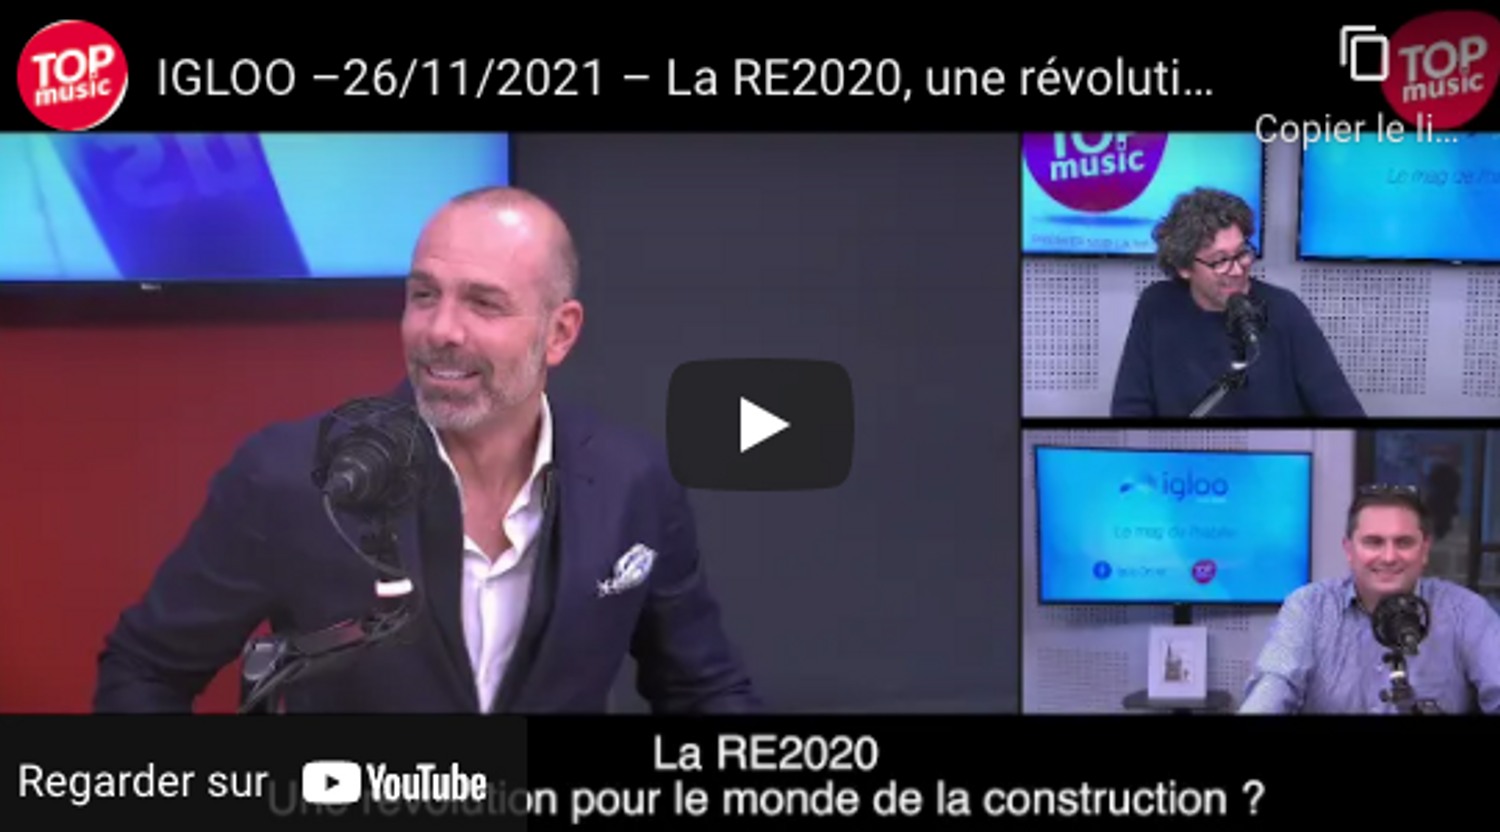 igloo : La RE2020, une révolution pour le monde de la construction ?